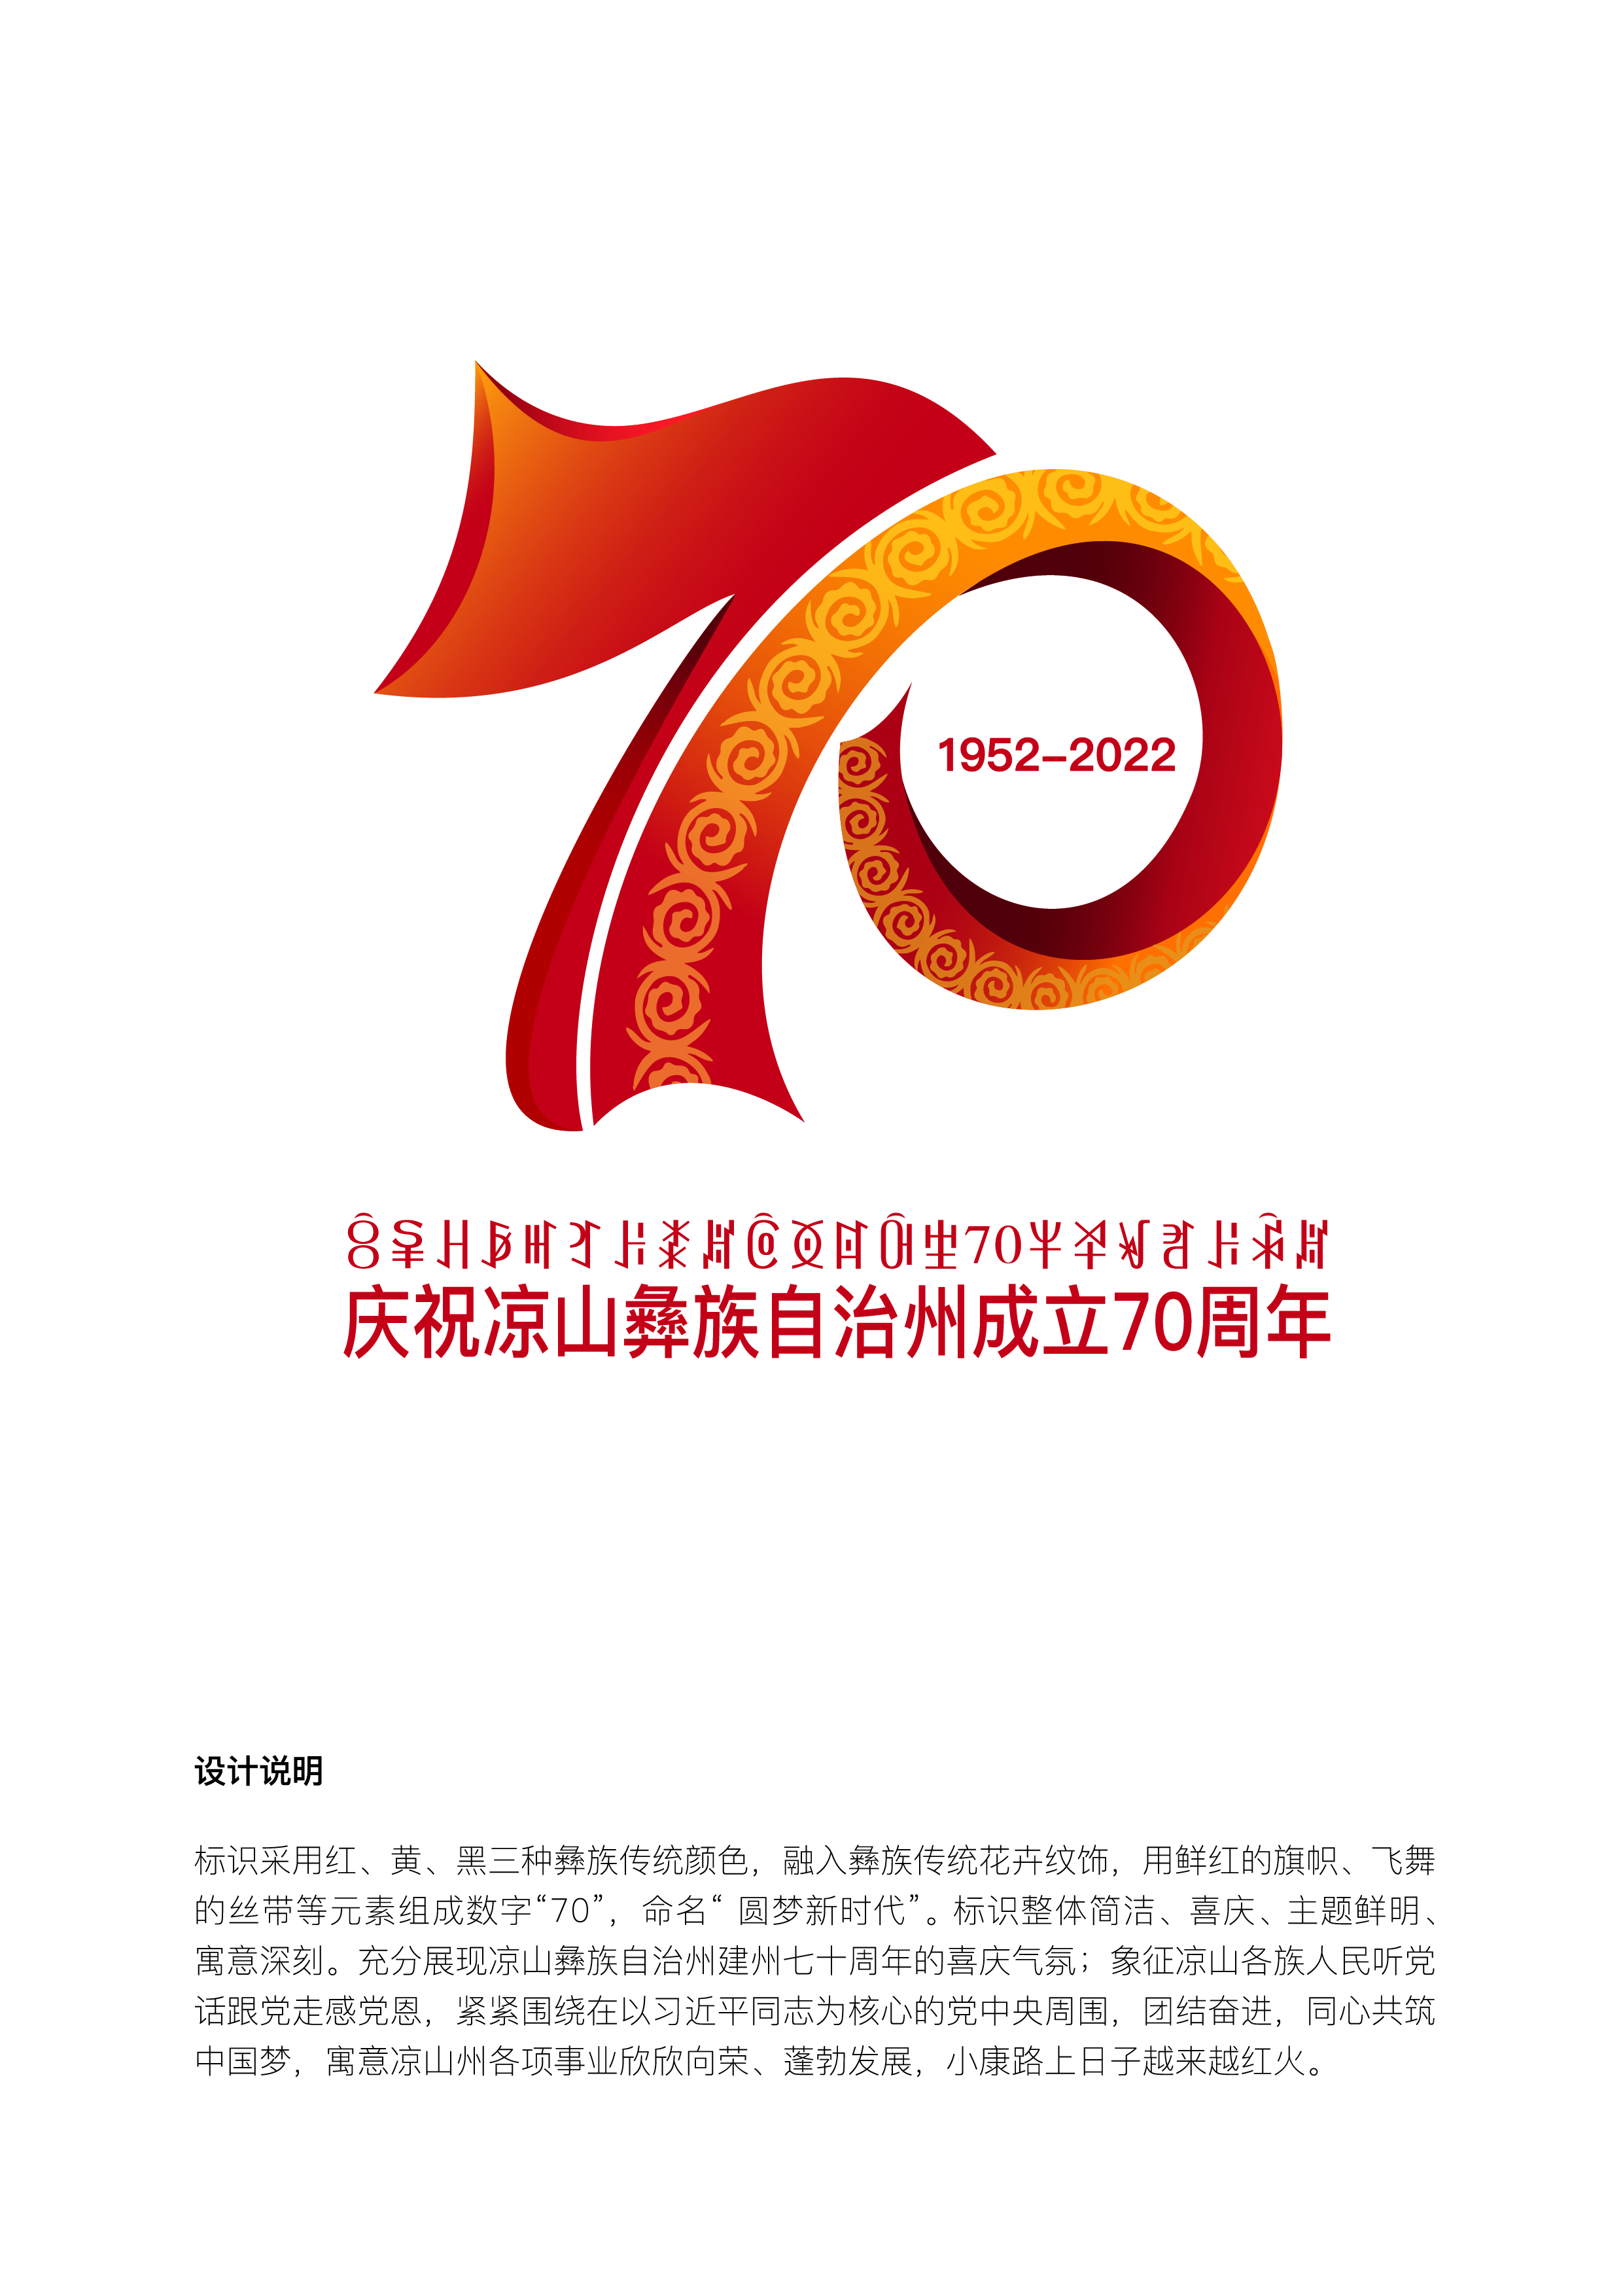 庆祝凉山彝族自治州成立70周年成就展在西昌开展